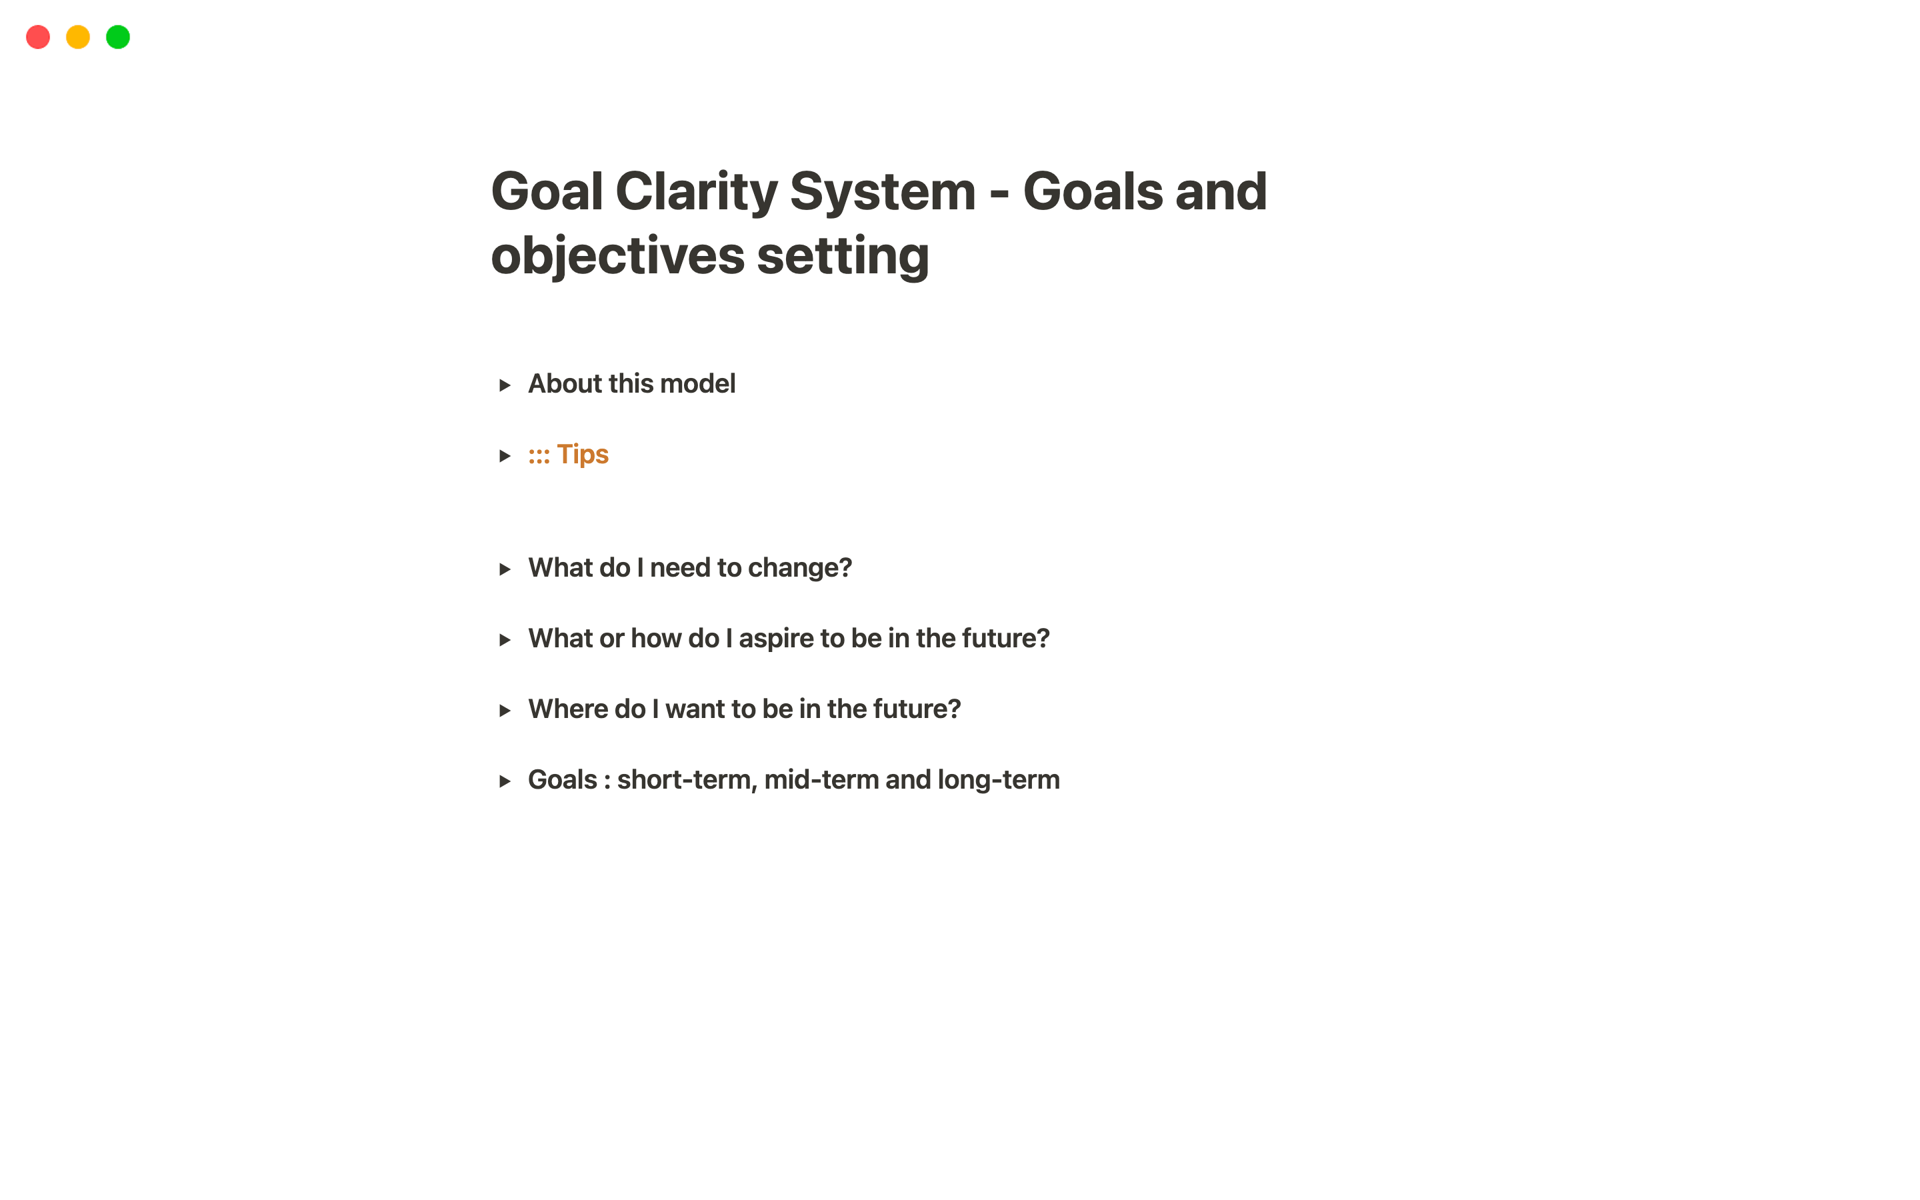 Uma prévia do modelo para Goal Clarity System - Goals and objectives setting